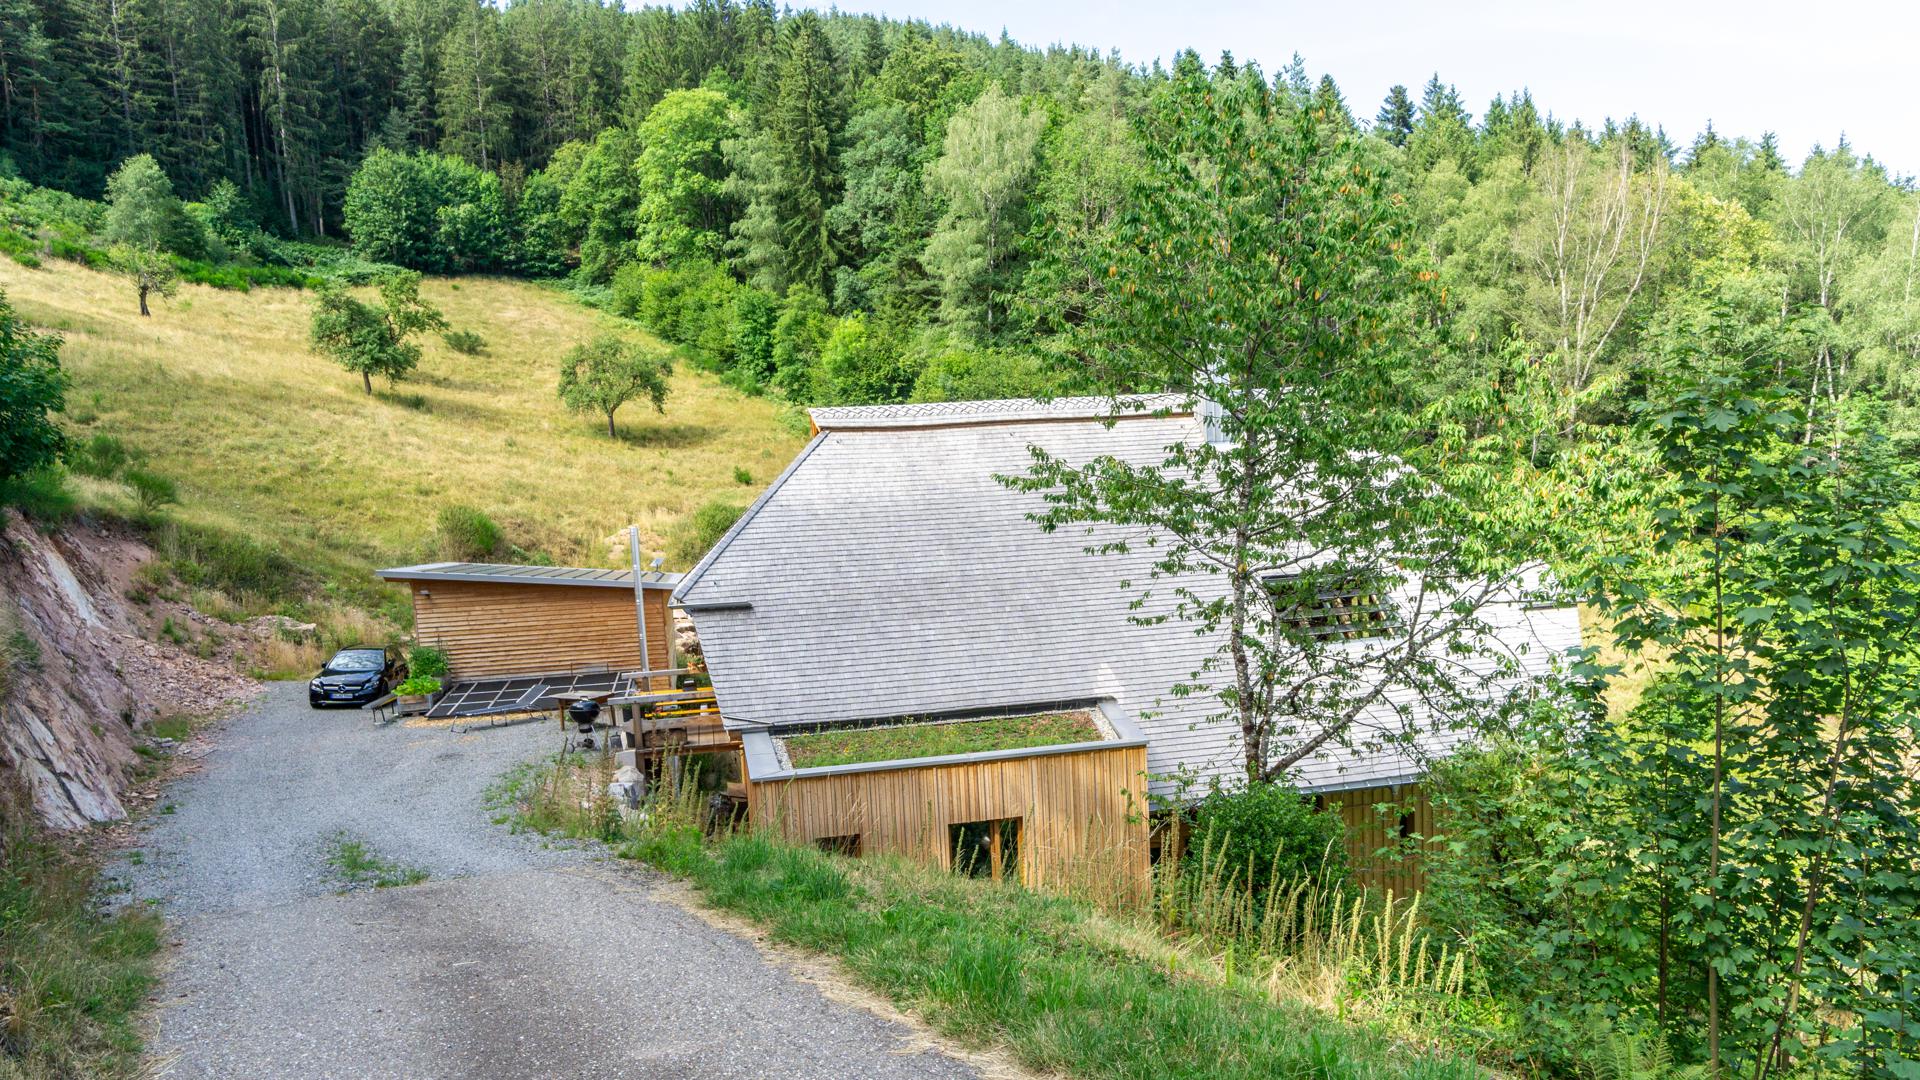 Der Gründlehof in Hornberg ist ein typischer Schwarzwaldhof. Er liegt einsam am Rande des Waldes. Die gelungene Sanierung erhielt jetzt den ältesten und wichtigsten Architekturpreis in Baden-Württemberg. 